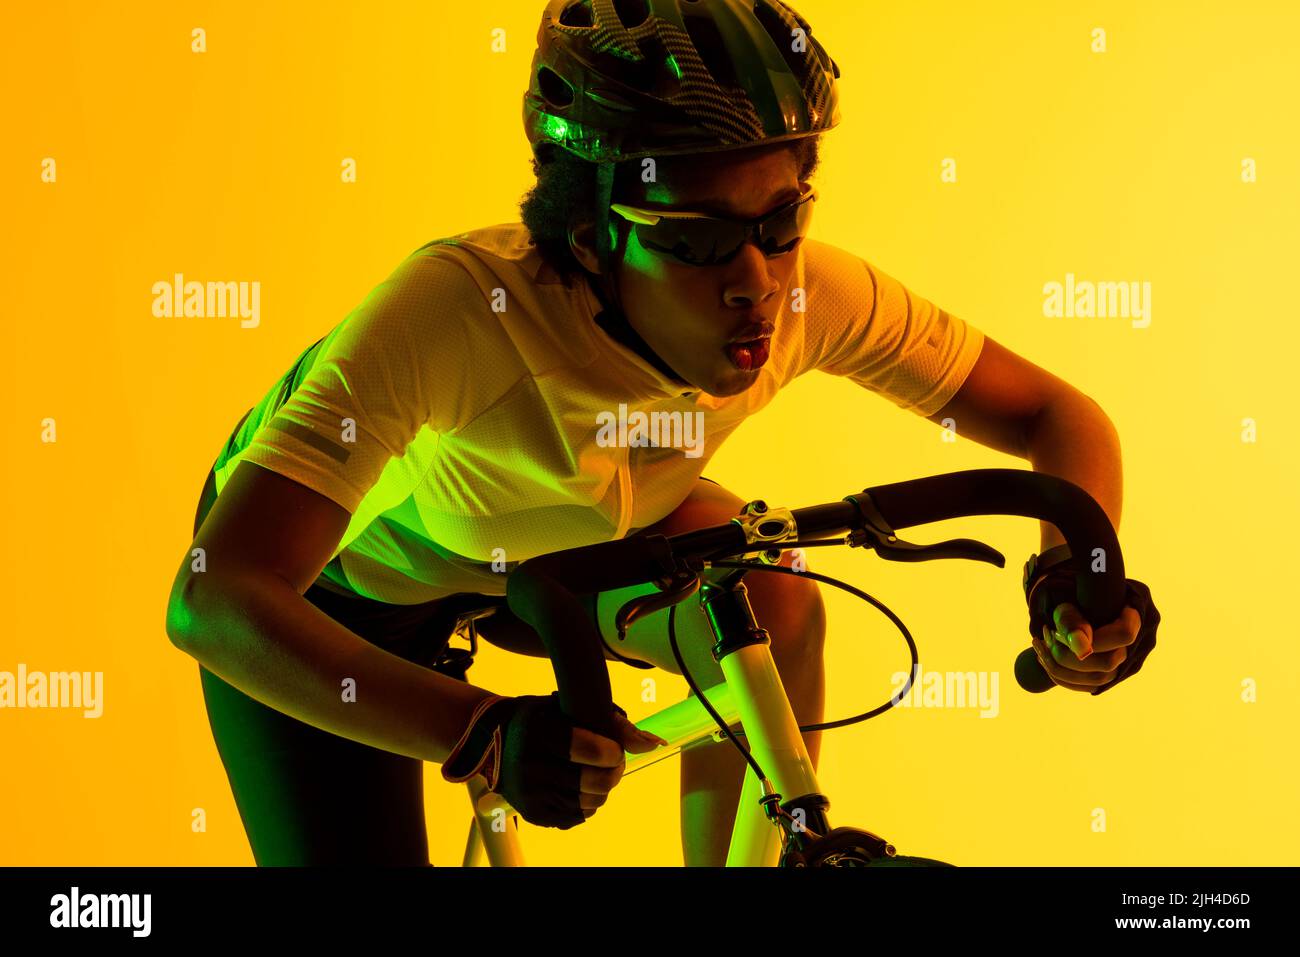 Immagine di ciclista femminile afroamericana in bicicletta con illuminazione gialla Foto Stock